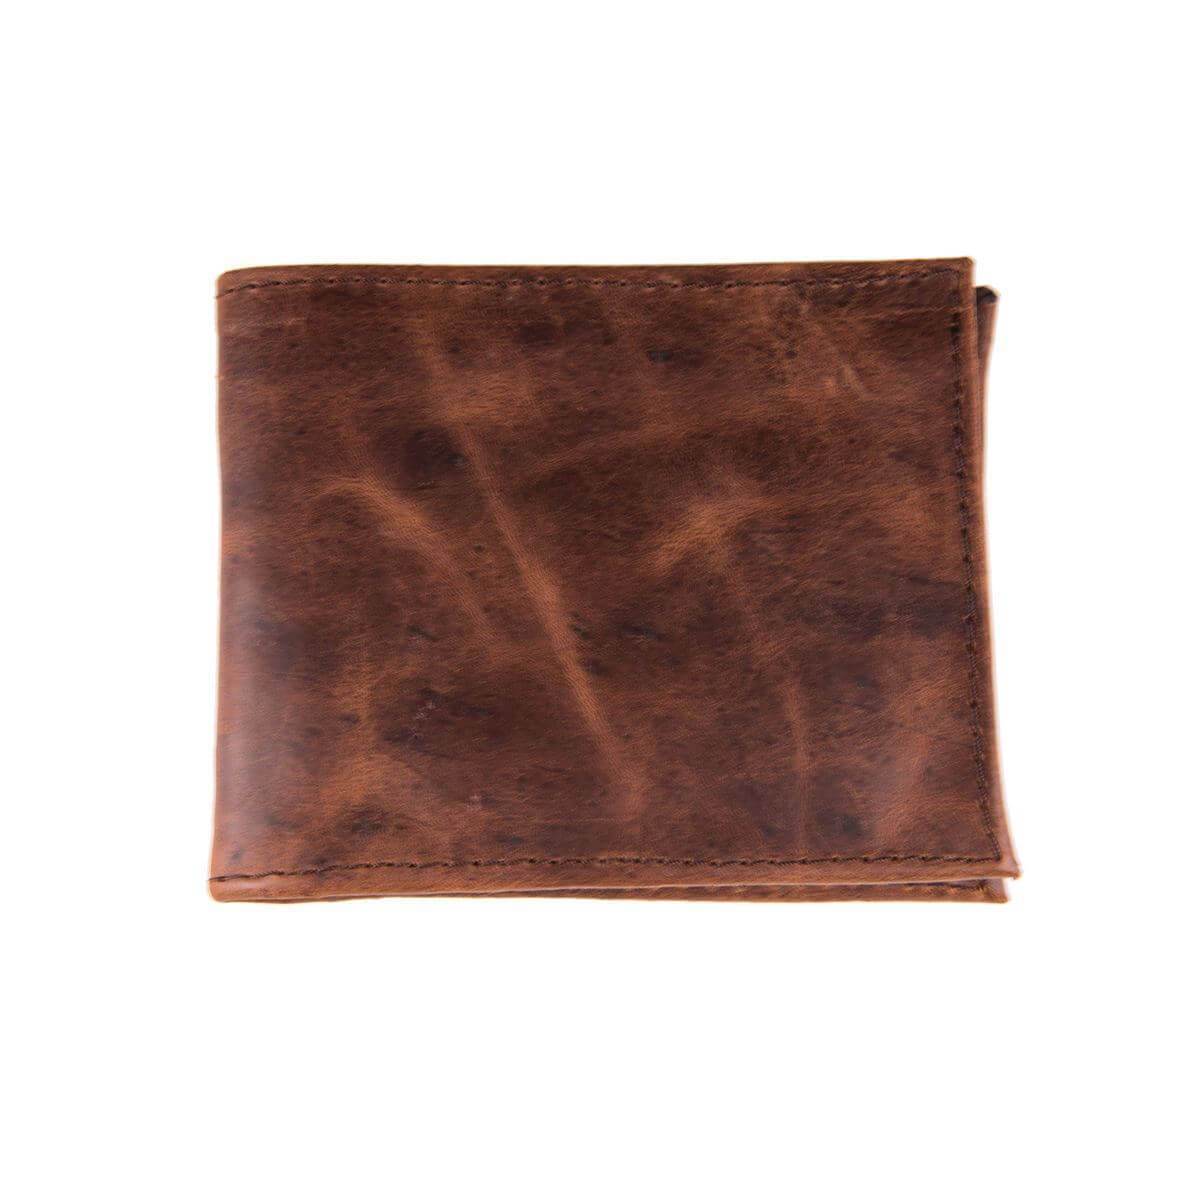 Trucha Chocolate Leather Woven Bi-Fold Wallet by La Matera